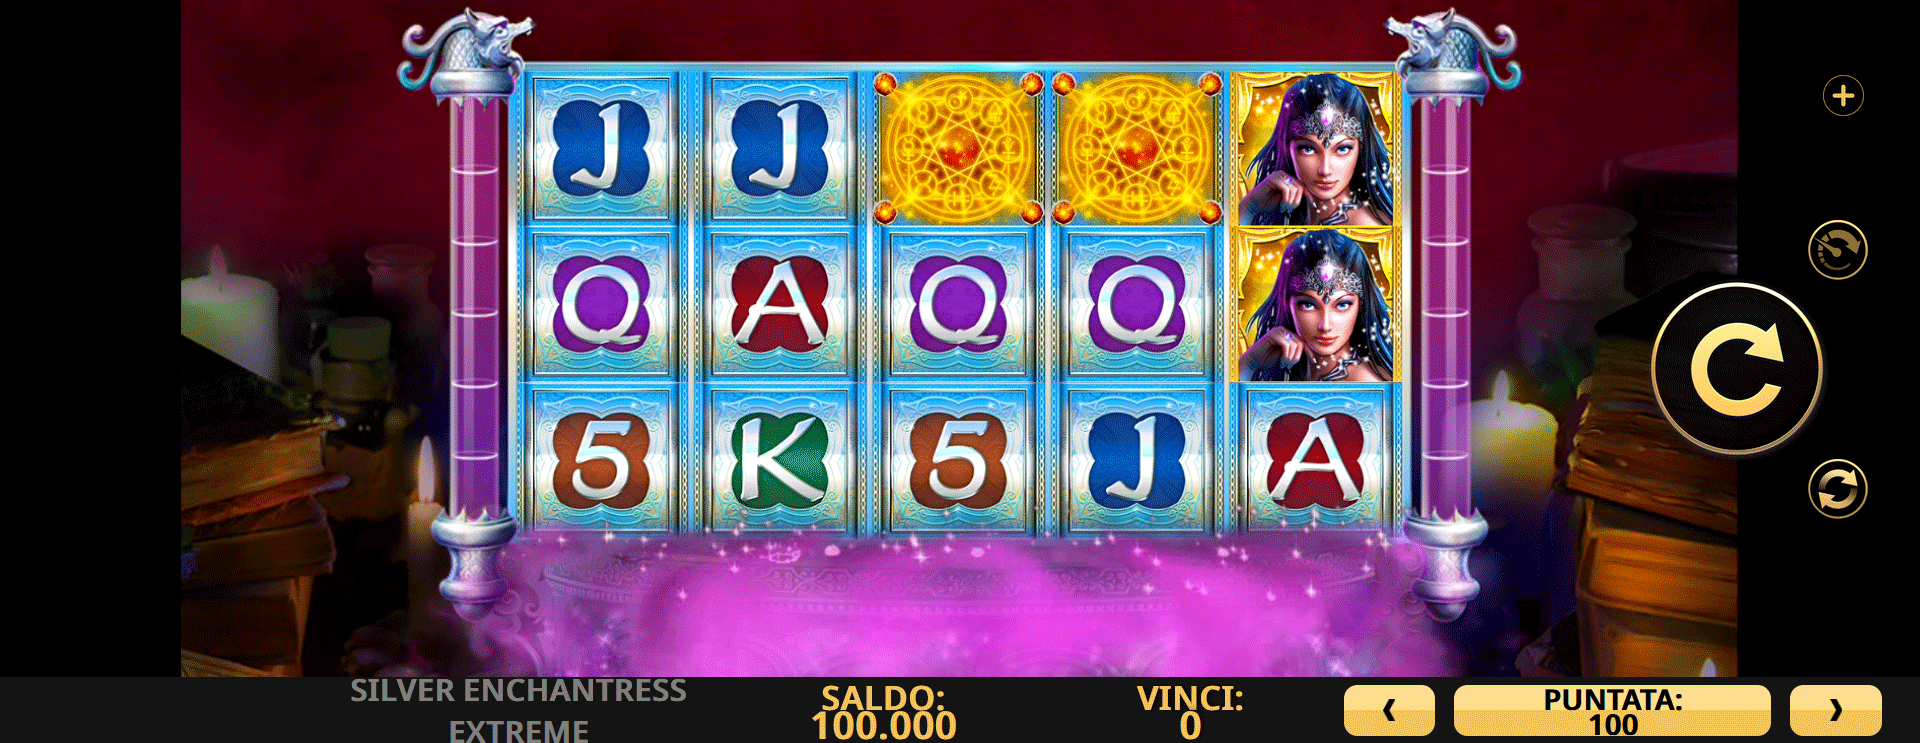 schermata del gioco slot machine silver enchantress extreme